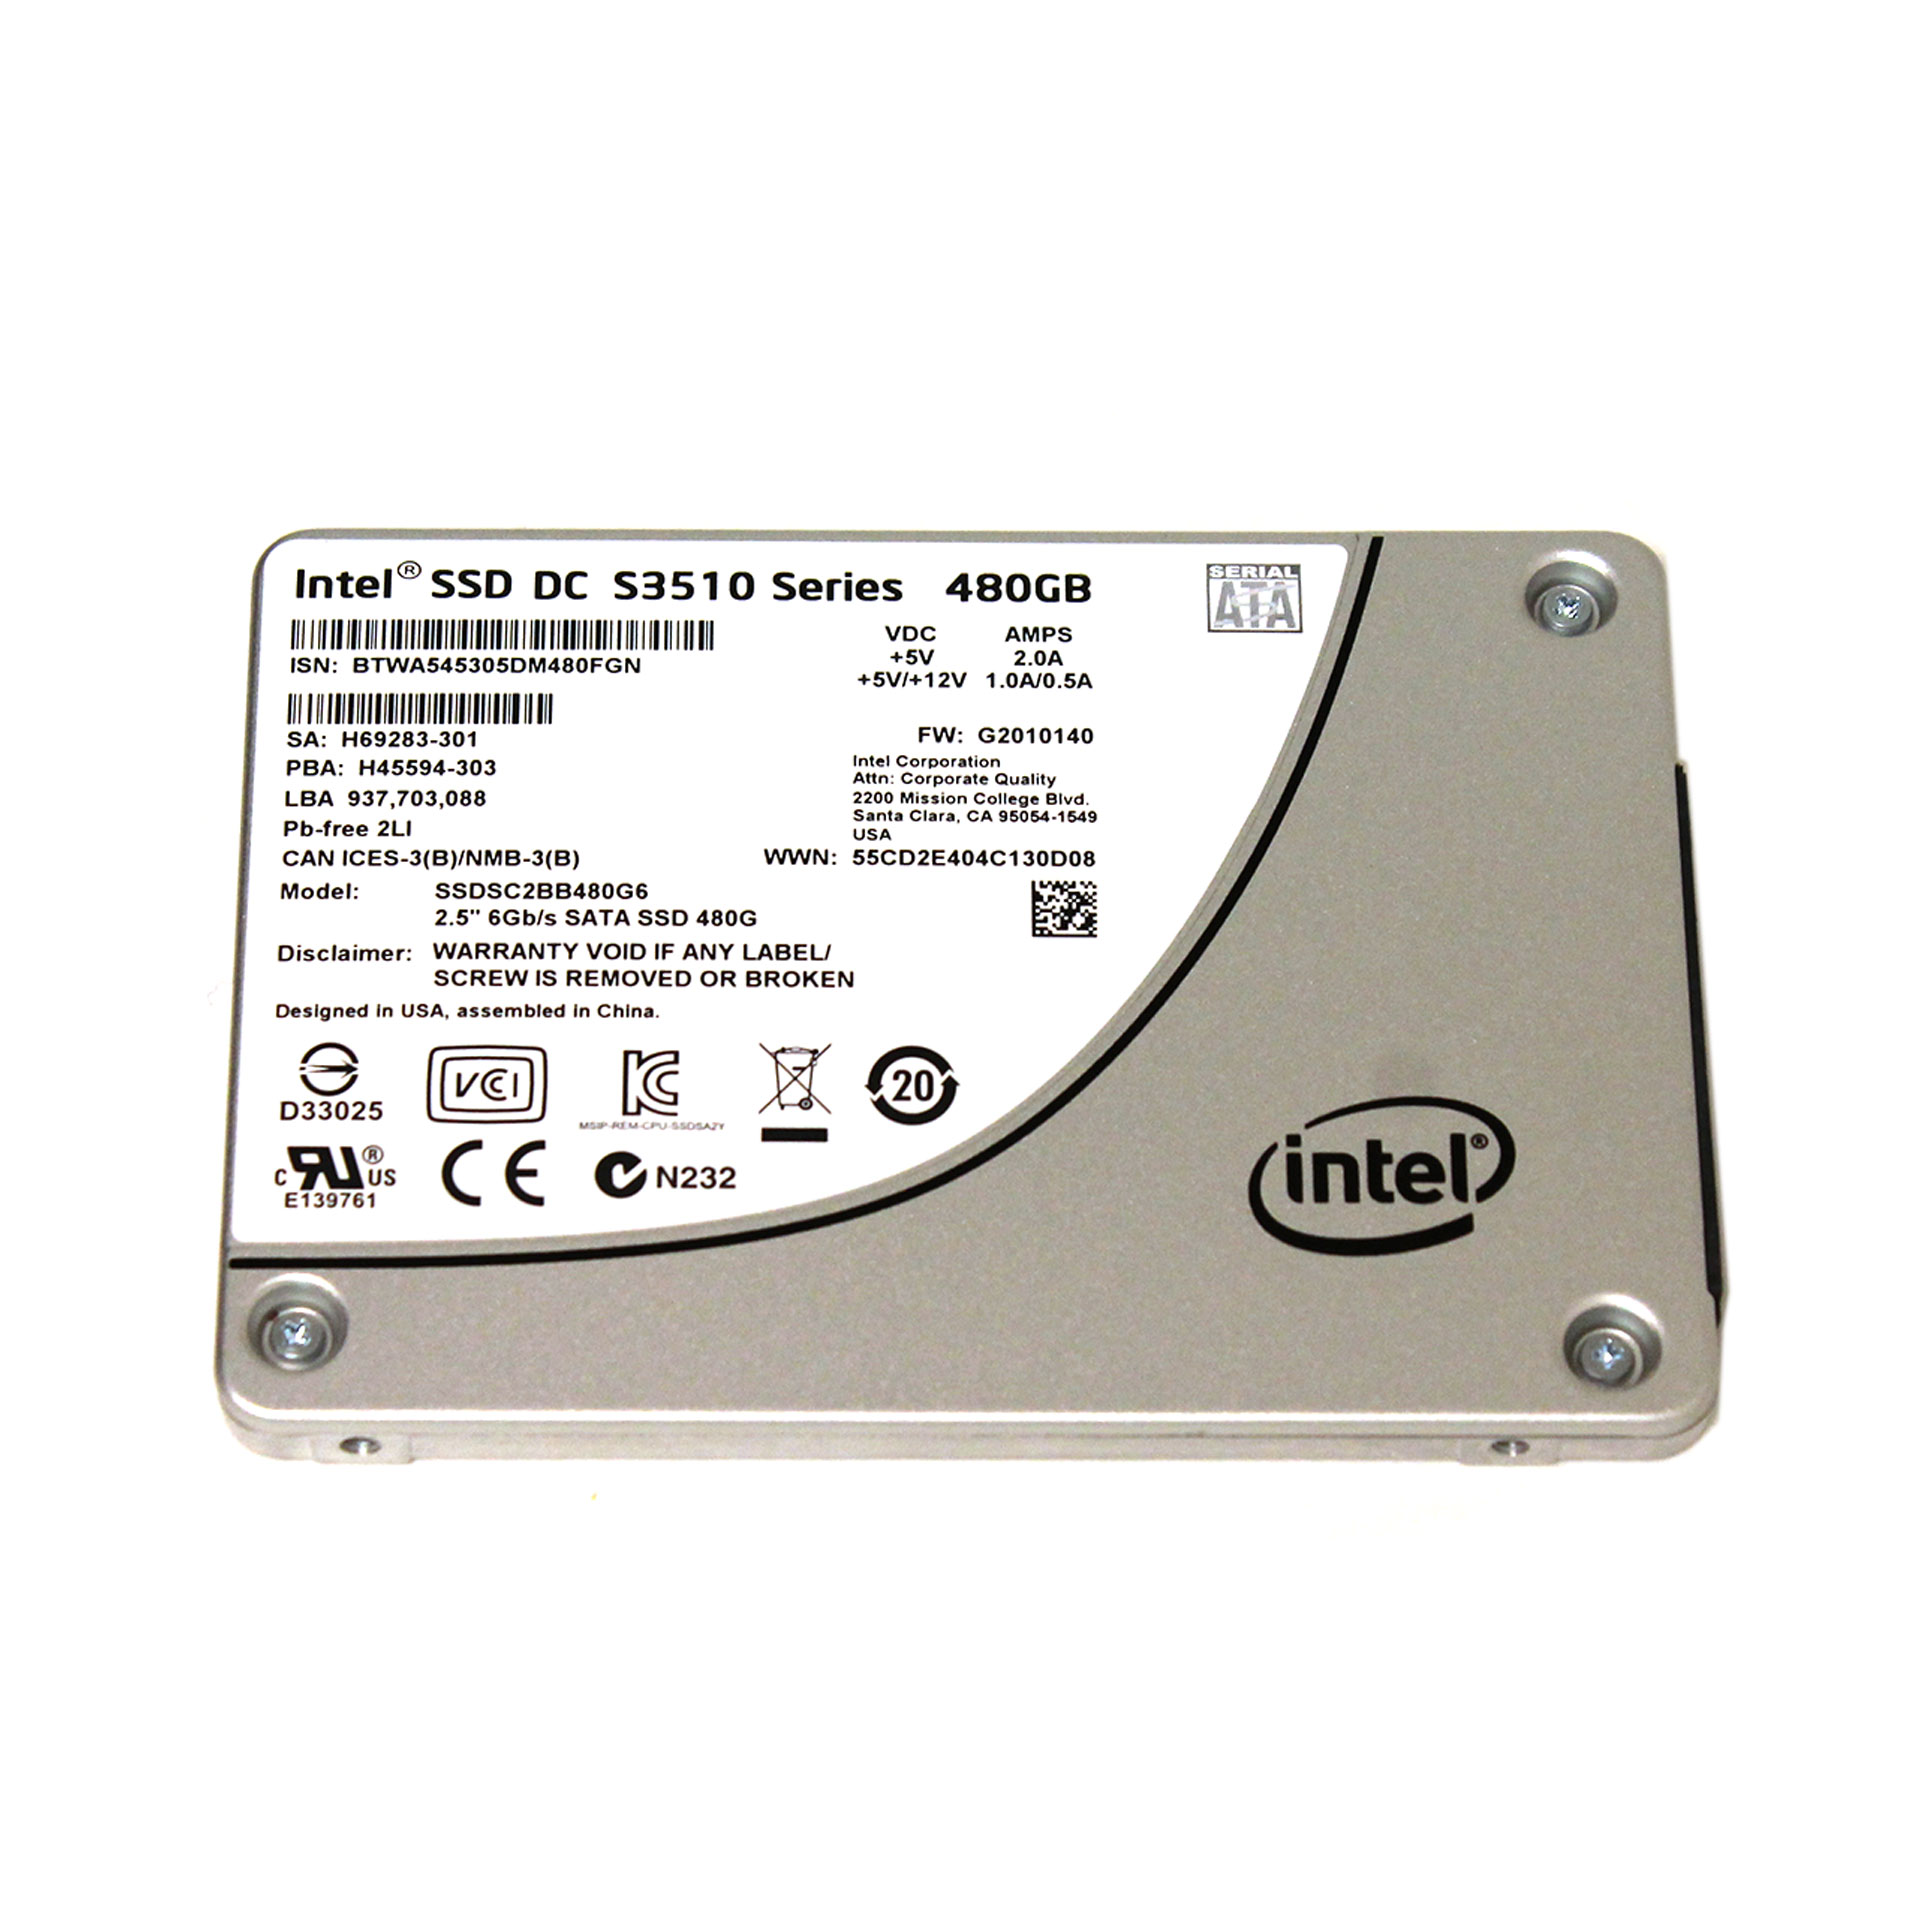 Intel SSDSC2BB480G6 DC S3510 SERIES 480 GB 2.5 6GB/S SATA SSD